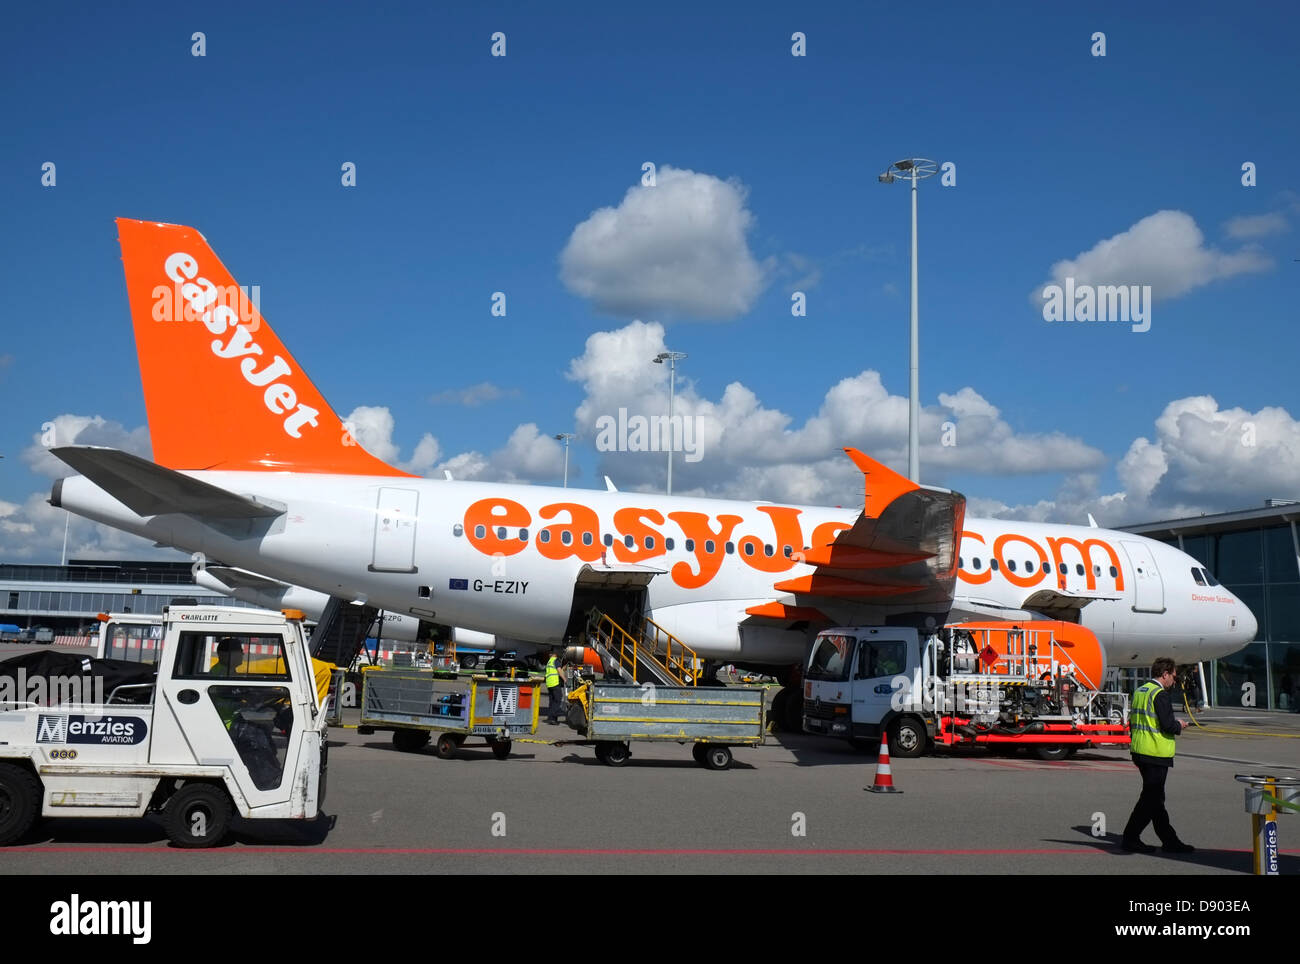 Niederlande, Amsterdam, Schiphol Airport, EasyJet A319 Airbus wird betankt, Gepäck geladen etc. Stockfoto